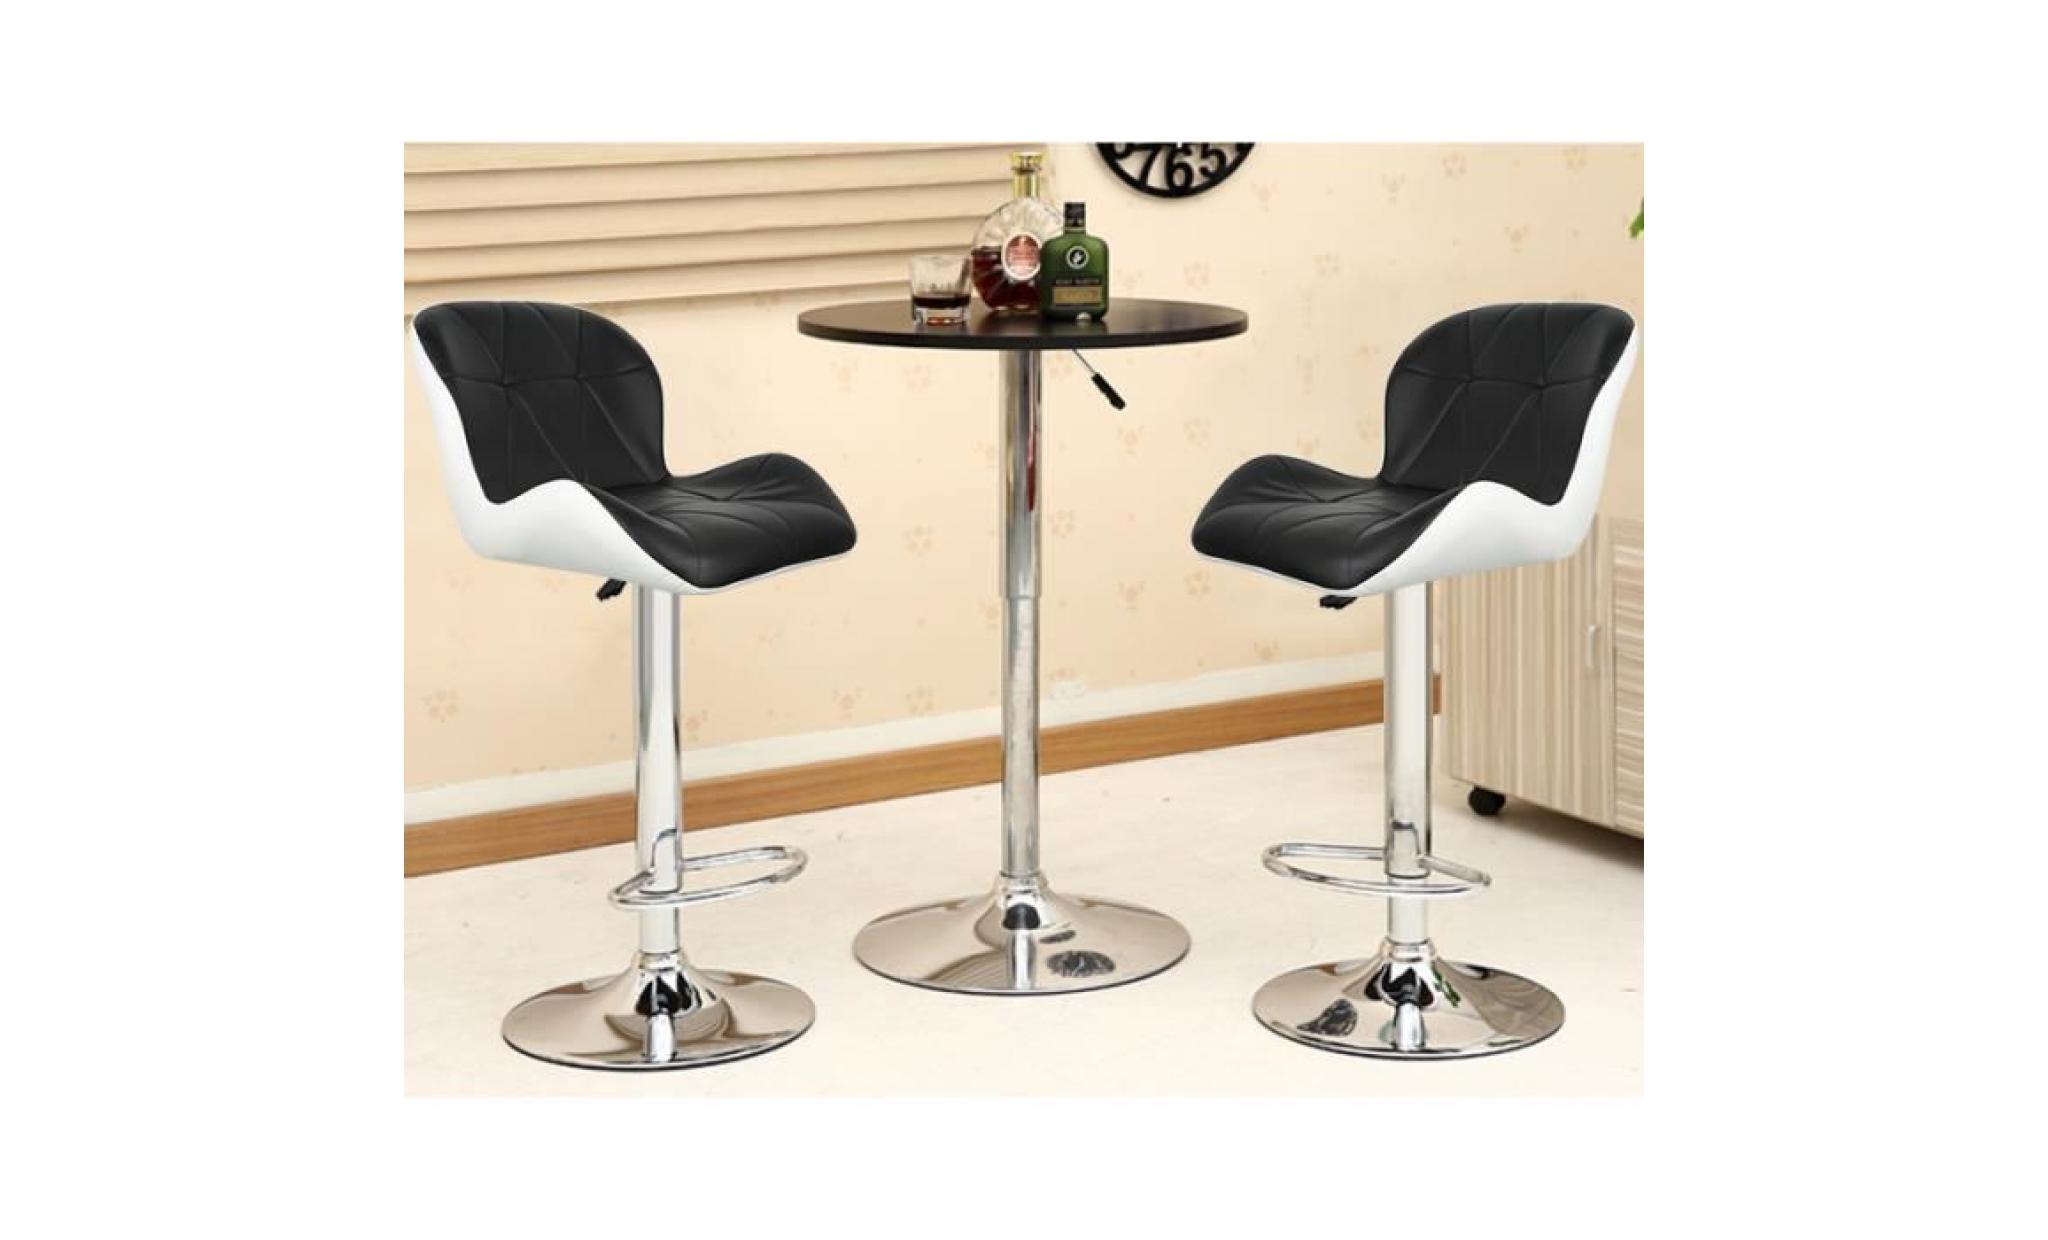 2x tabourets de bar,chaise moderne stools à la cuisine en faux cuir nouvelle chaise pu cuir noir+blanc